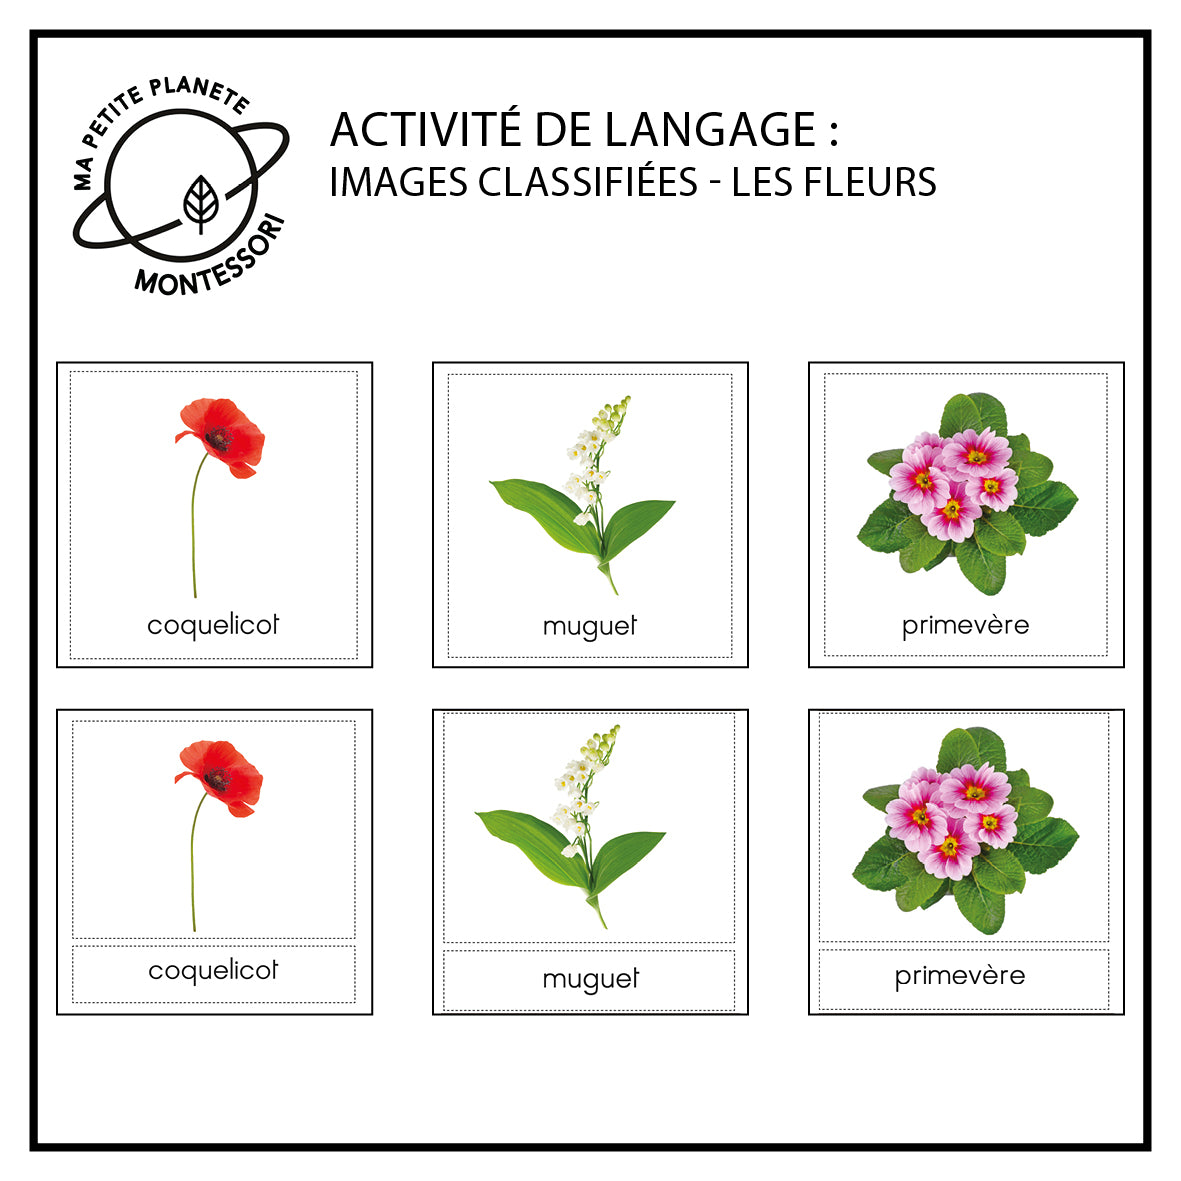 Images classifiées Montessori - Les fleurs